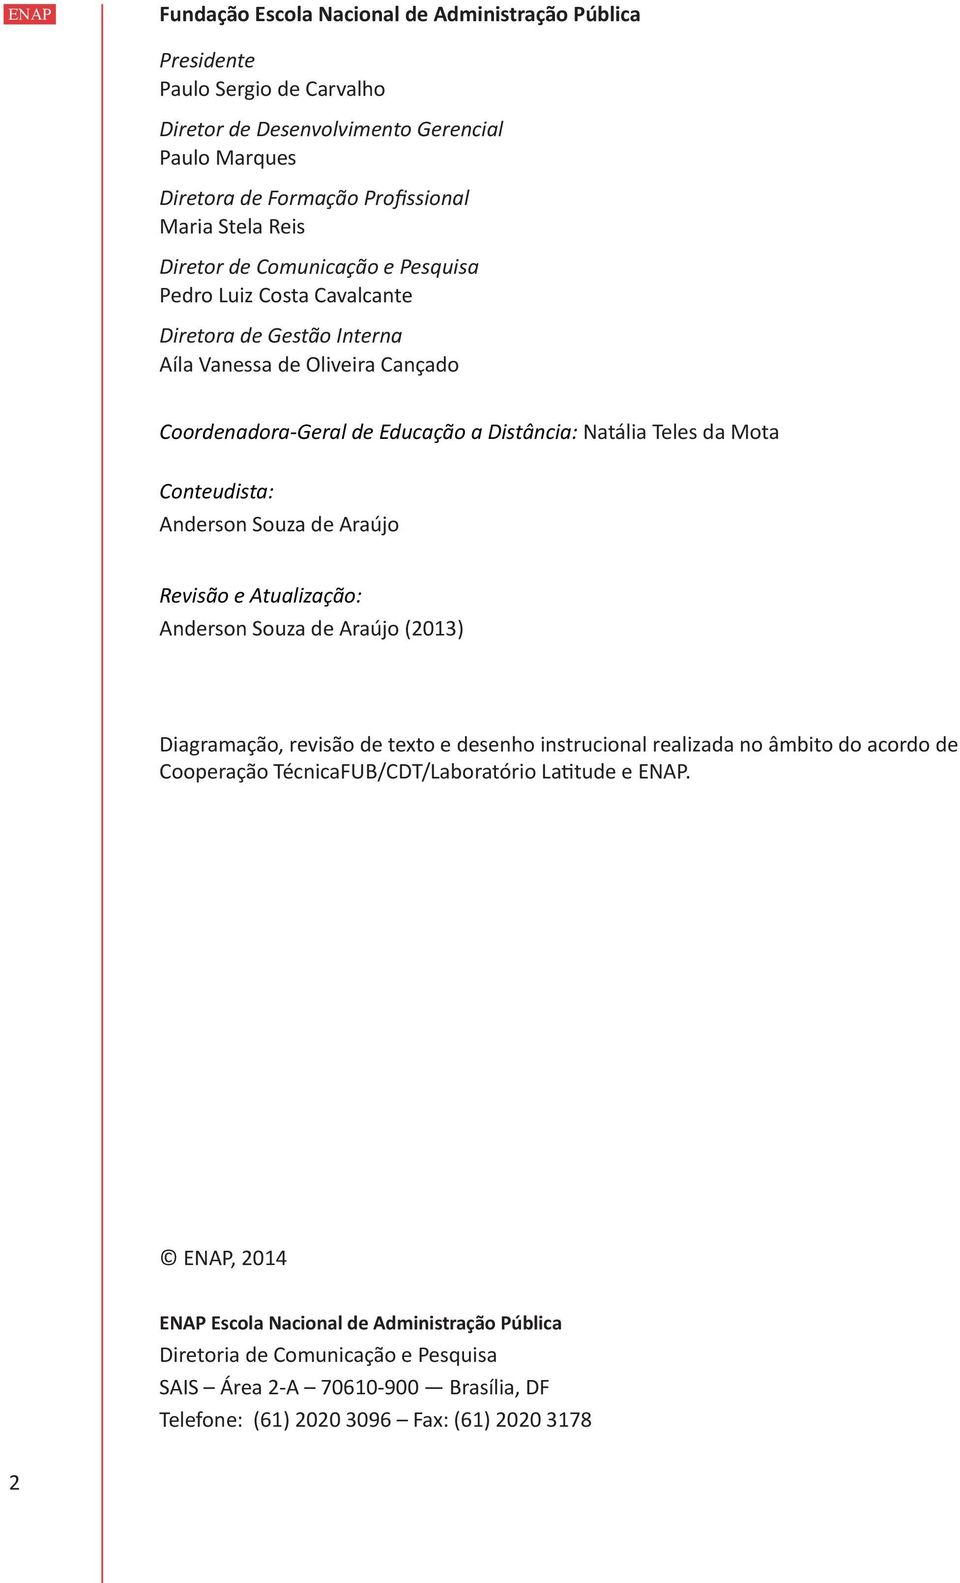 Anderson Souza de Araújo Revisão e Atualização: Anderson Souza de Araújo (2013) Diagramação, revisão de texto e desenho instrucional realizada no âmbito do acordo de Cooperação